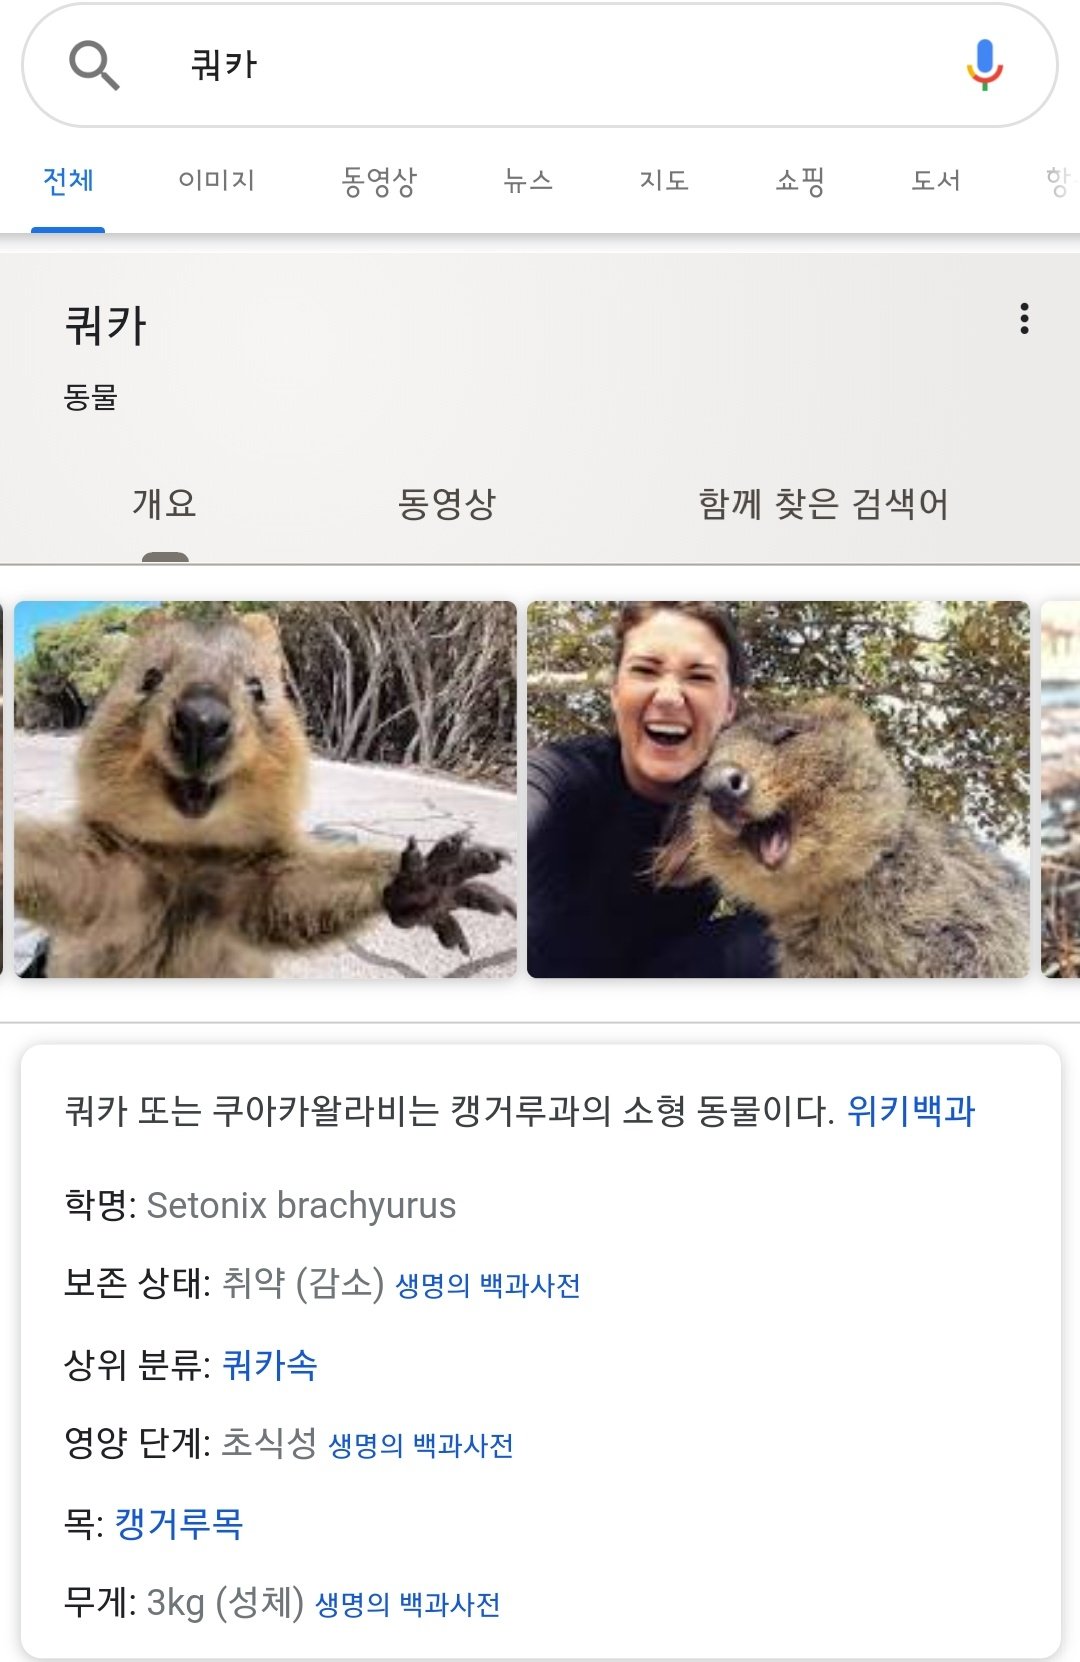 째라람 ᴅ Llllljhllllljh この動物を쿼카 Quokka クアッカワラビー って呼んでます 韓国 ではいつも笑ってる 笑顔の 動物で有名です T Co B6fcwdsiza Twitter